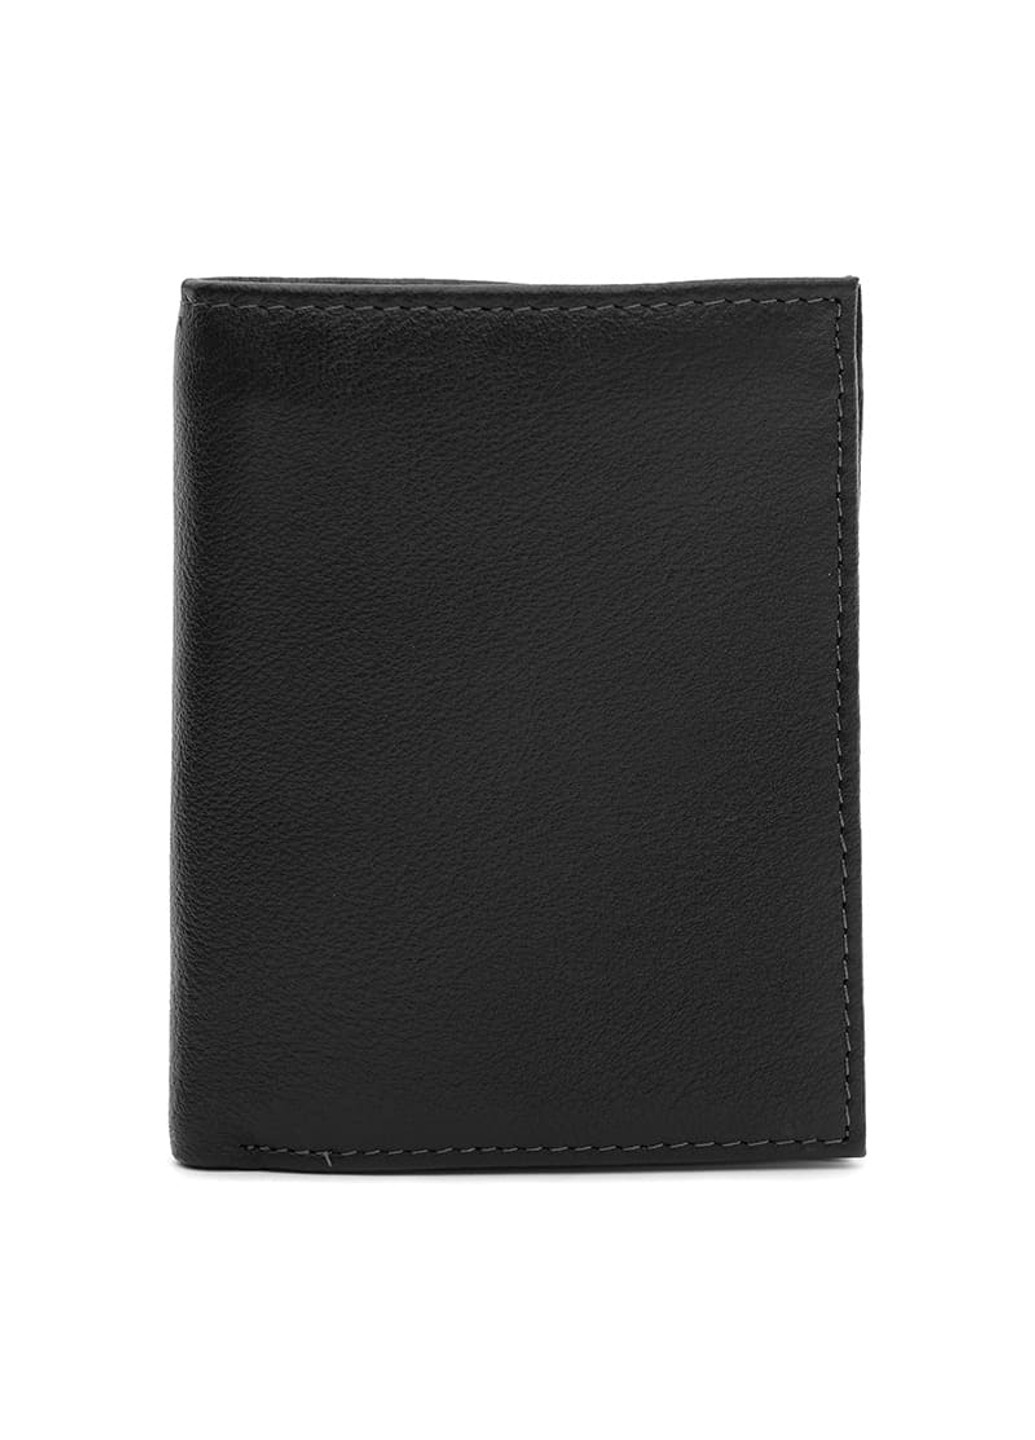 Мужской кожаный кошелек K1632bl-black Ricco Grande (266143569)